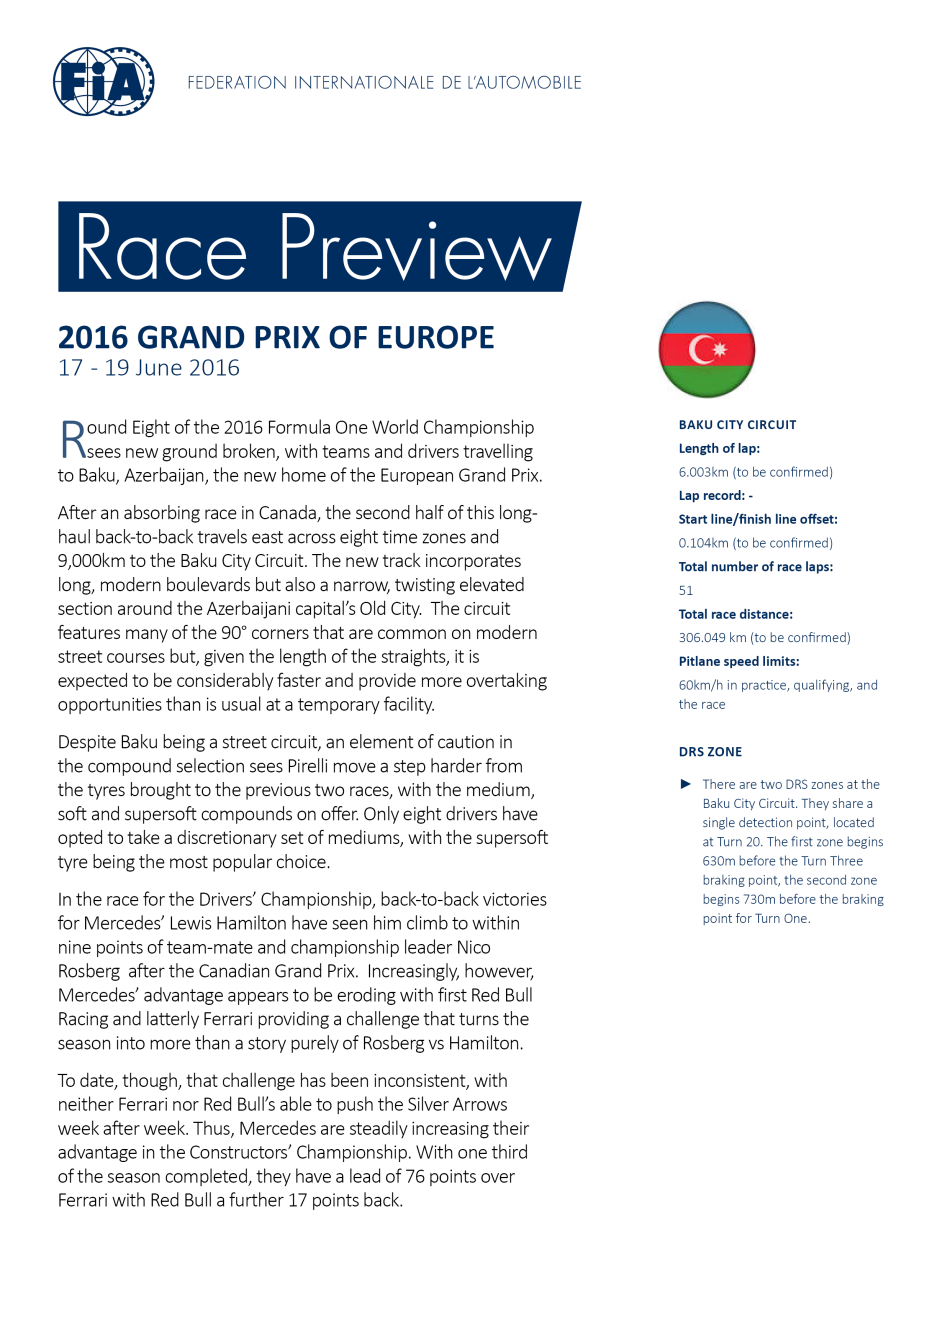 F1 2016 European Grand Prix Preview